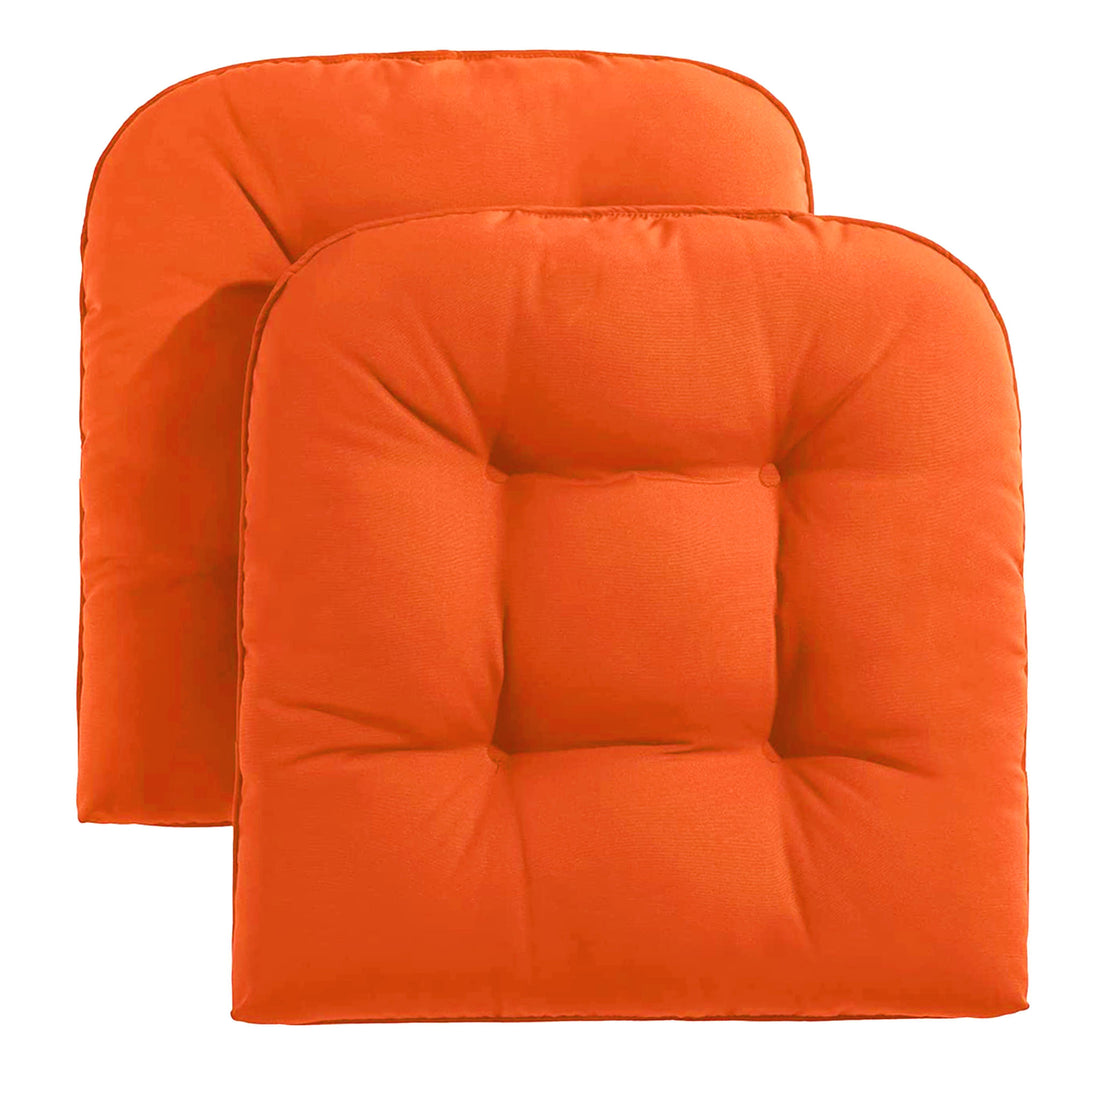 Set of 2 Marina Indoor/Outdoor Seat Cushions | Orange | 20"x20"x3"